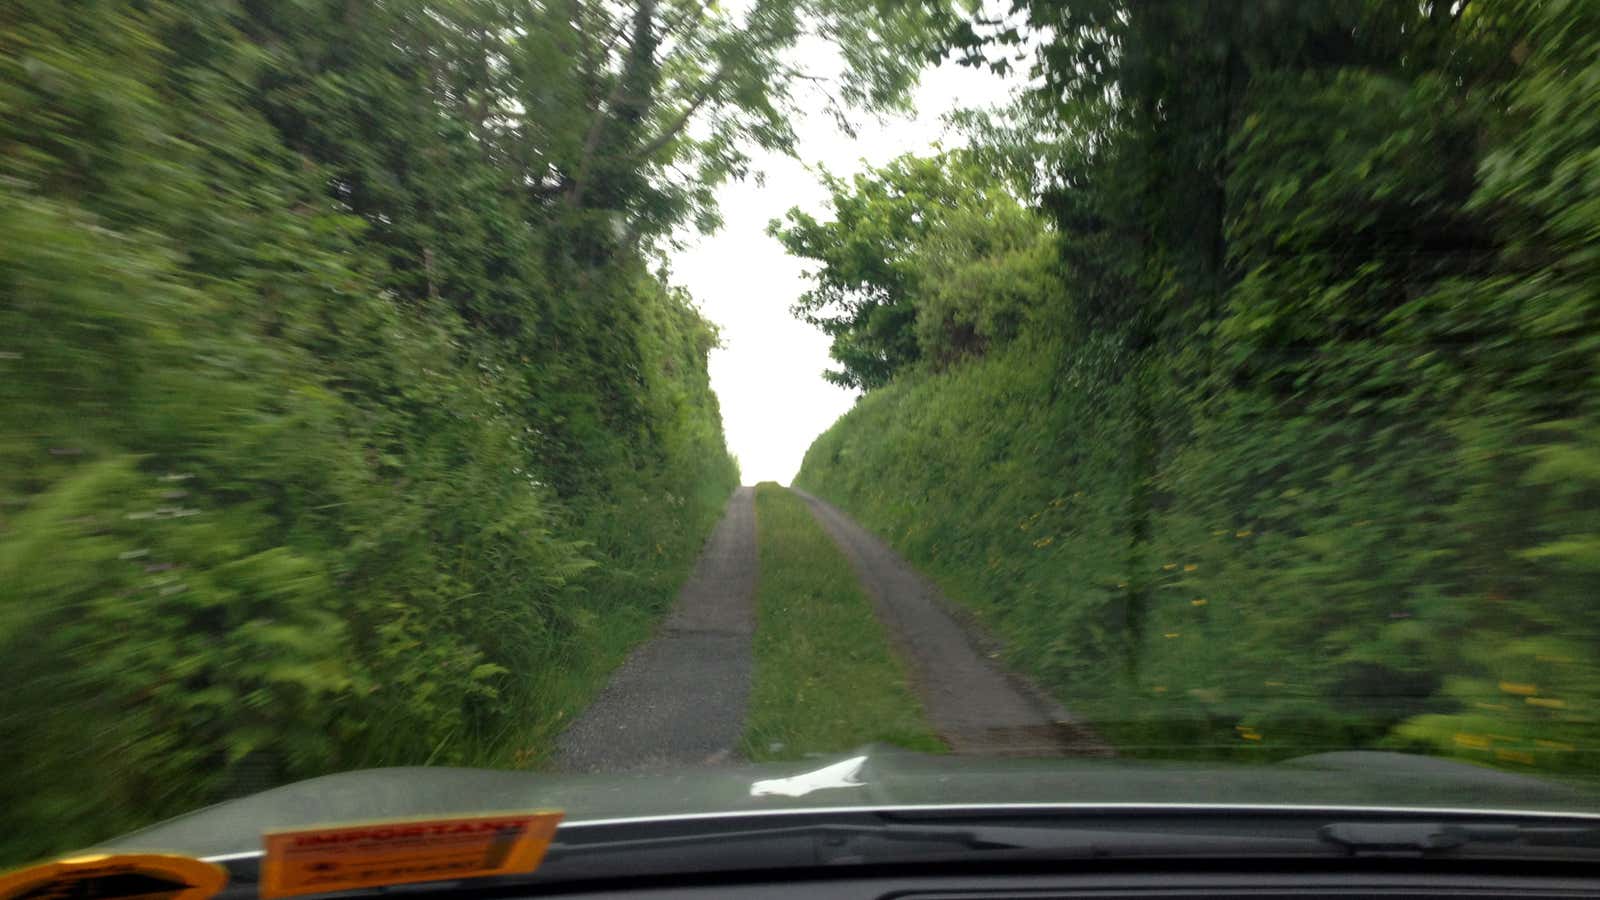 The road ahead isn’t as bumpy as it looks.